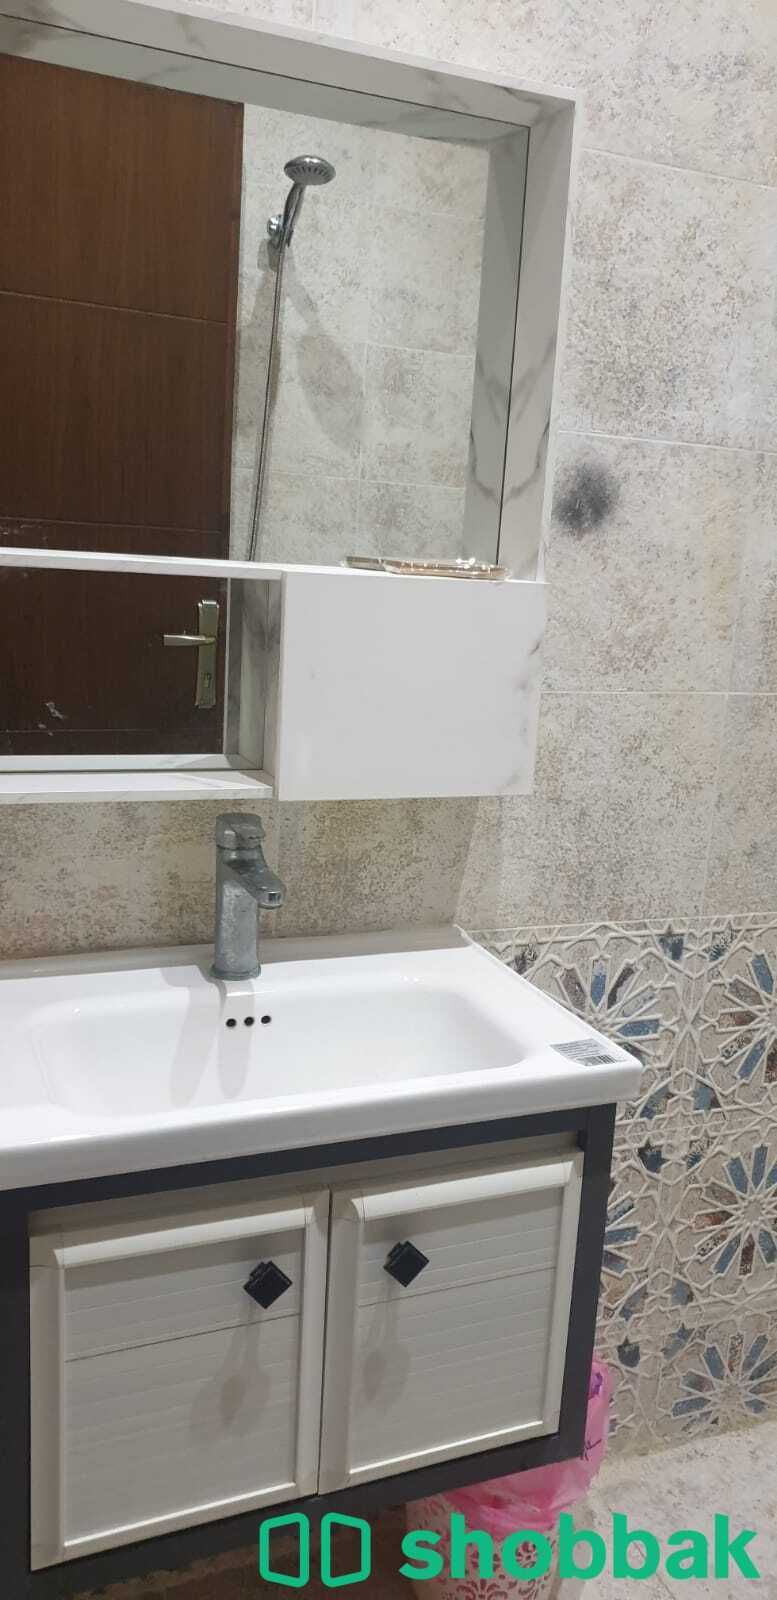 للمتميزين غرفة مفرده مفروشه للايجار بجده مع حمام خاص. شباك السعودية